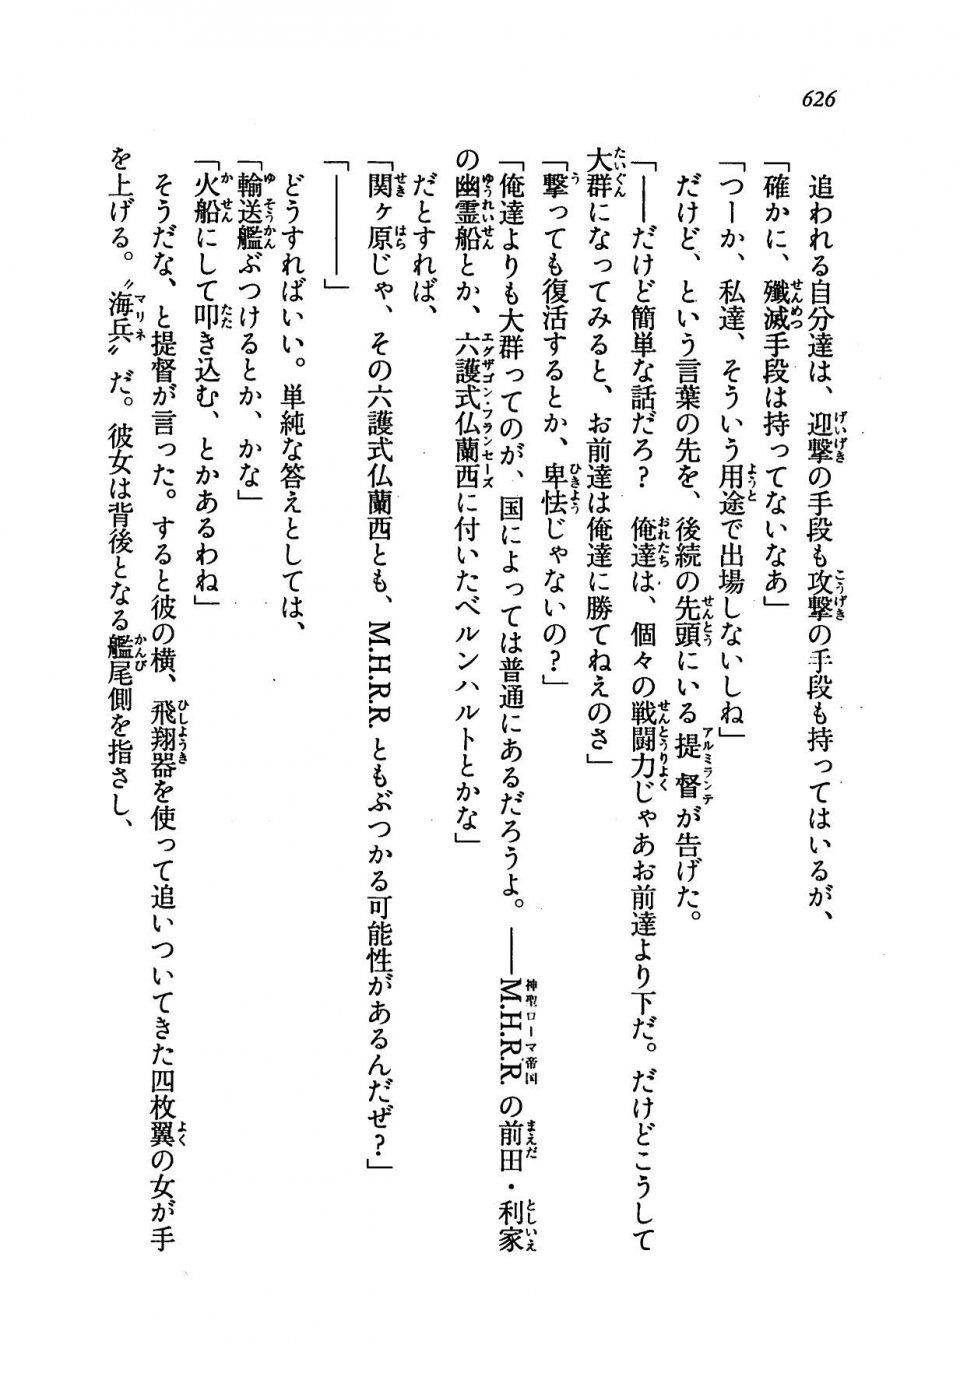 Kyoukai Senjou no Horizon LN Vol 19(8A) - Photo #626